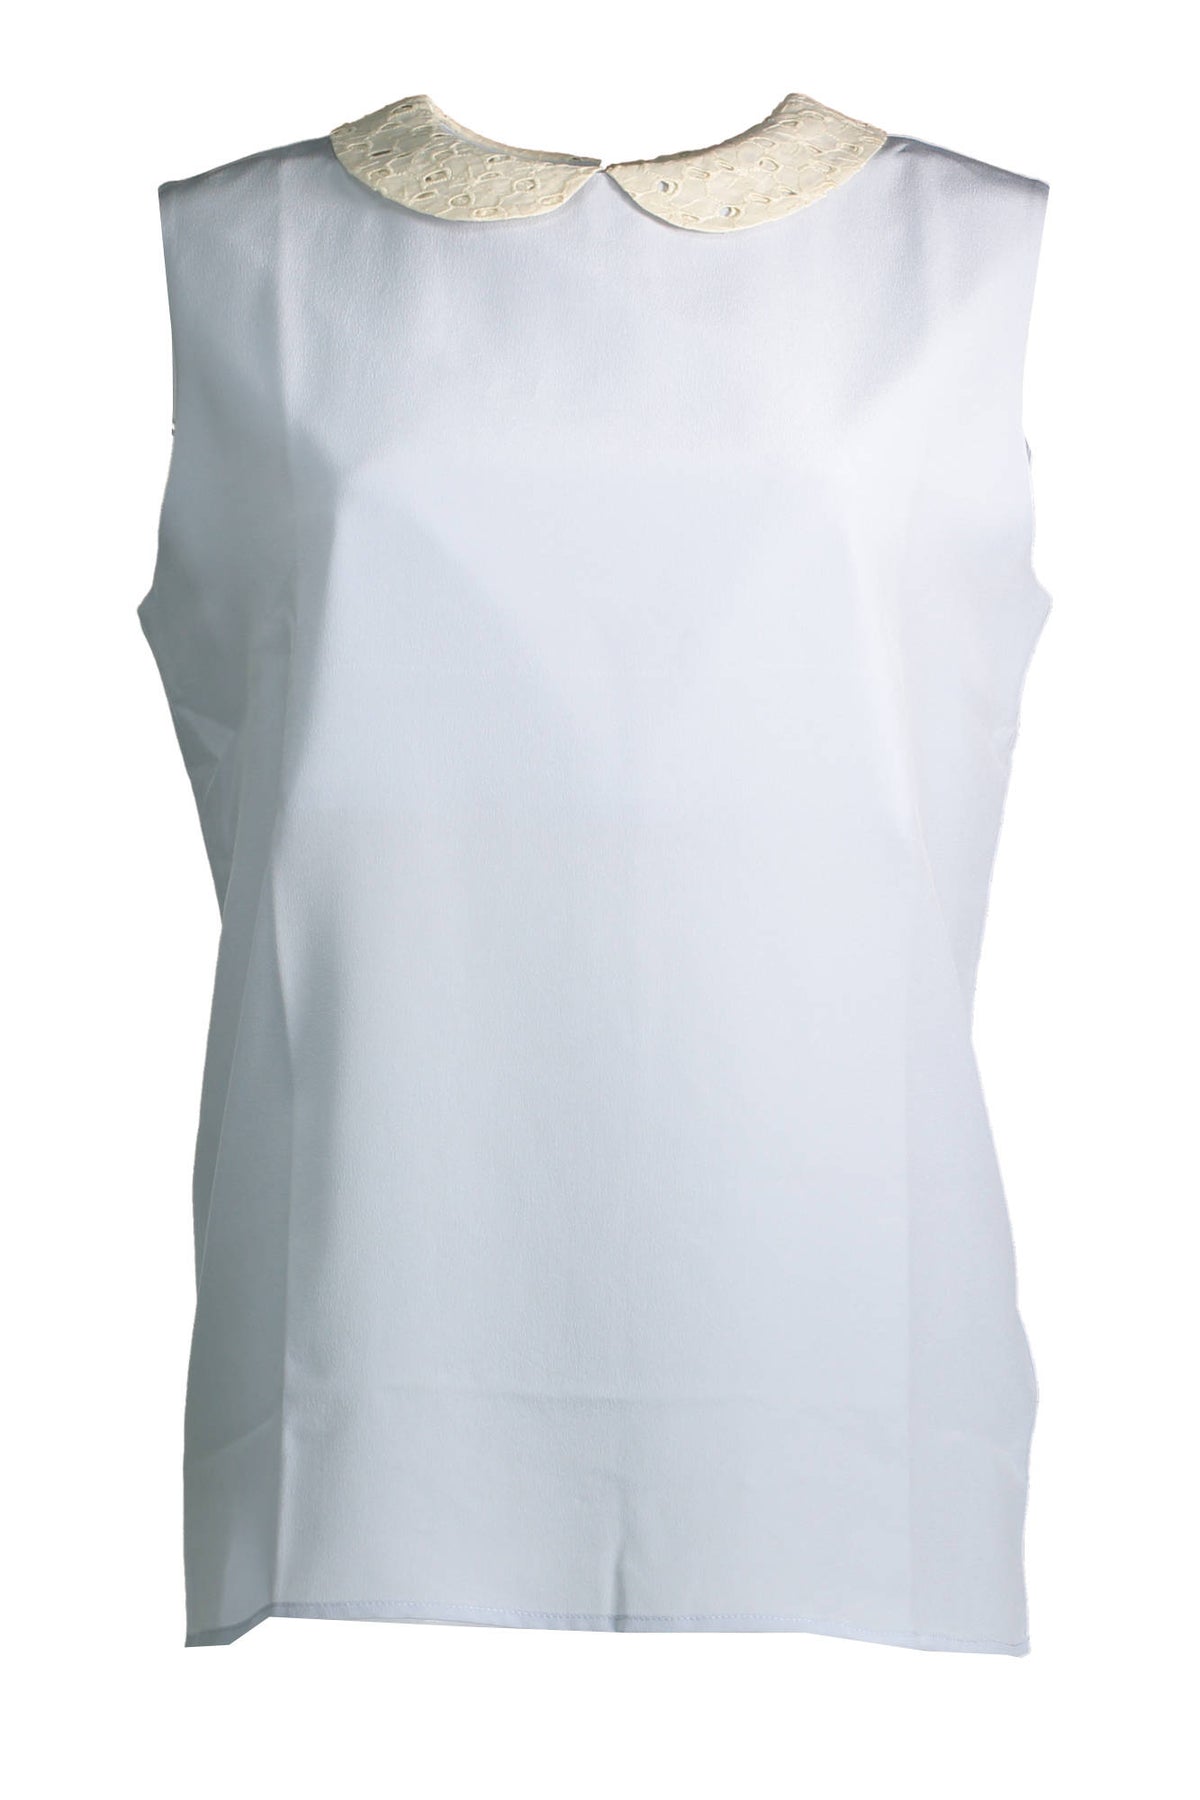 GANT Damen Top T-Shirts Shirt Tanktop mit Rundhalsausschnitt, ärmellos